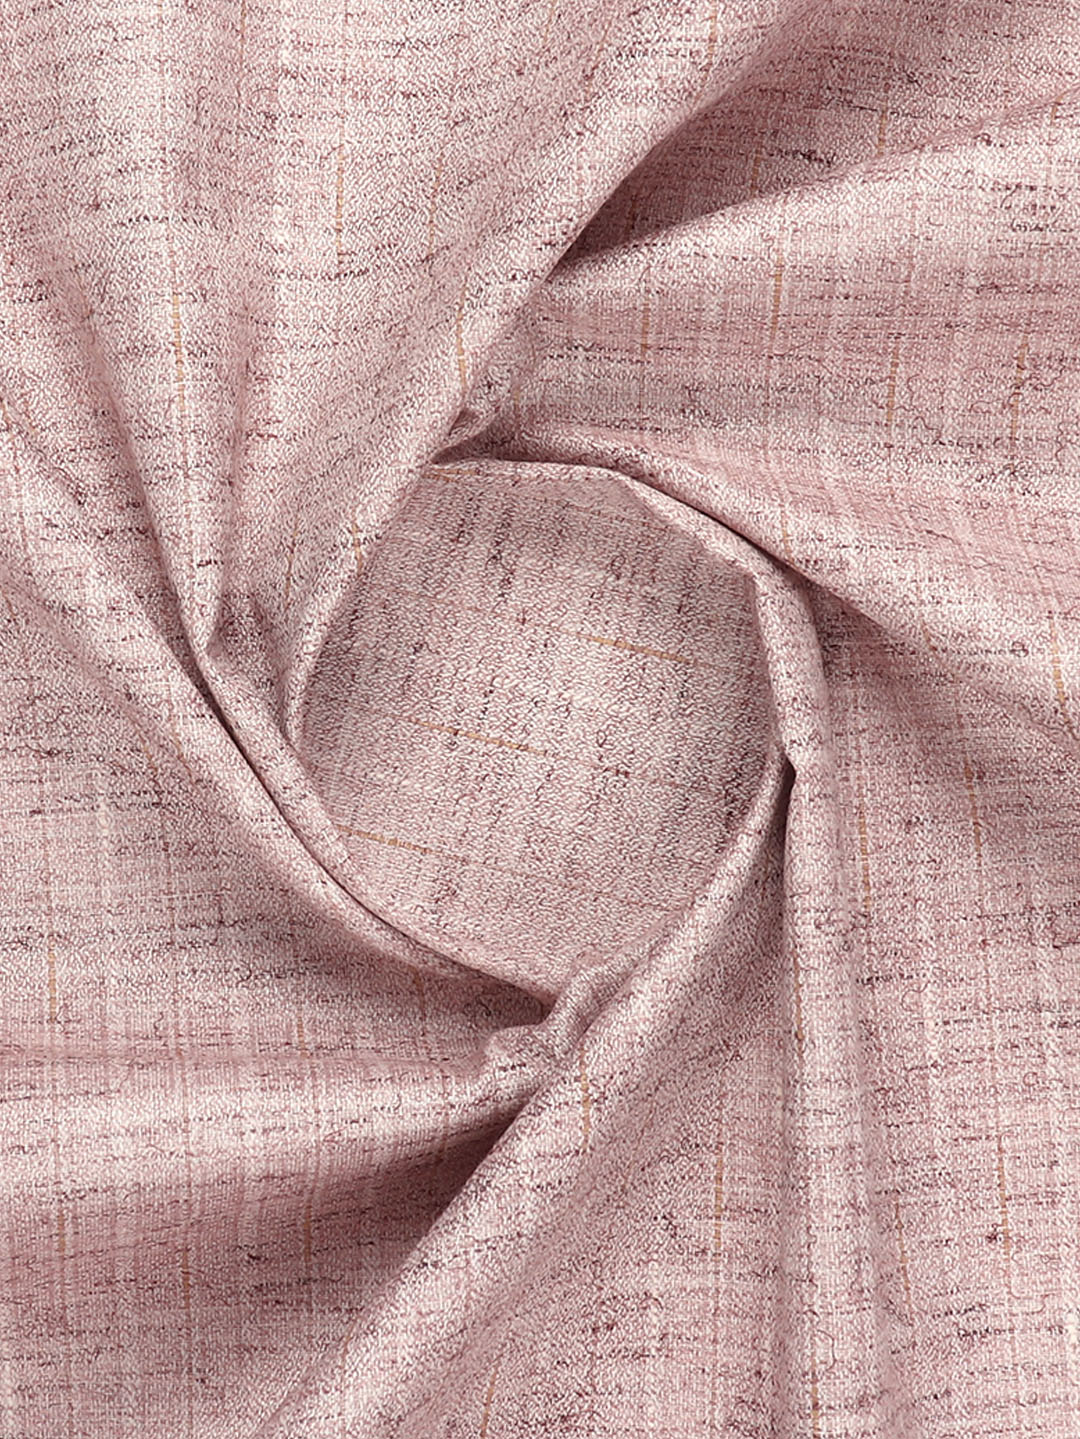 Cotton Rich Peach Self Design Shirt Fabric - Galaxy Art